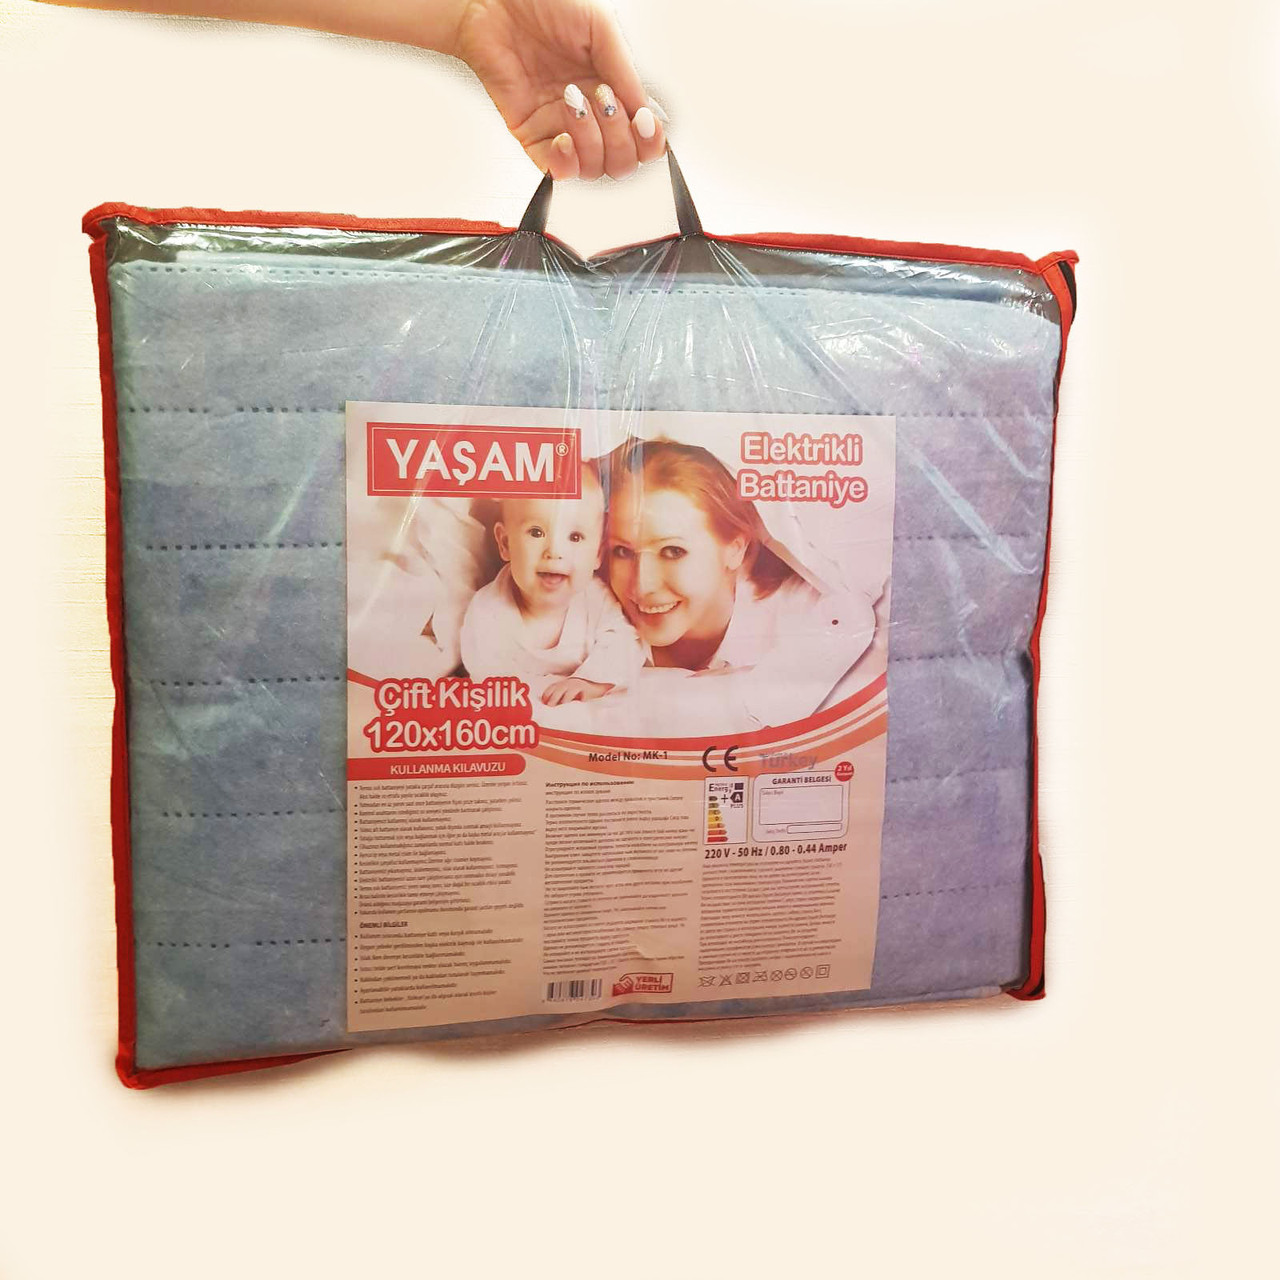 Yasam / Электрическая простынь YASAM 120x160 - Турция (Электро простынь - термошов - байка)